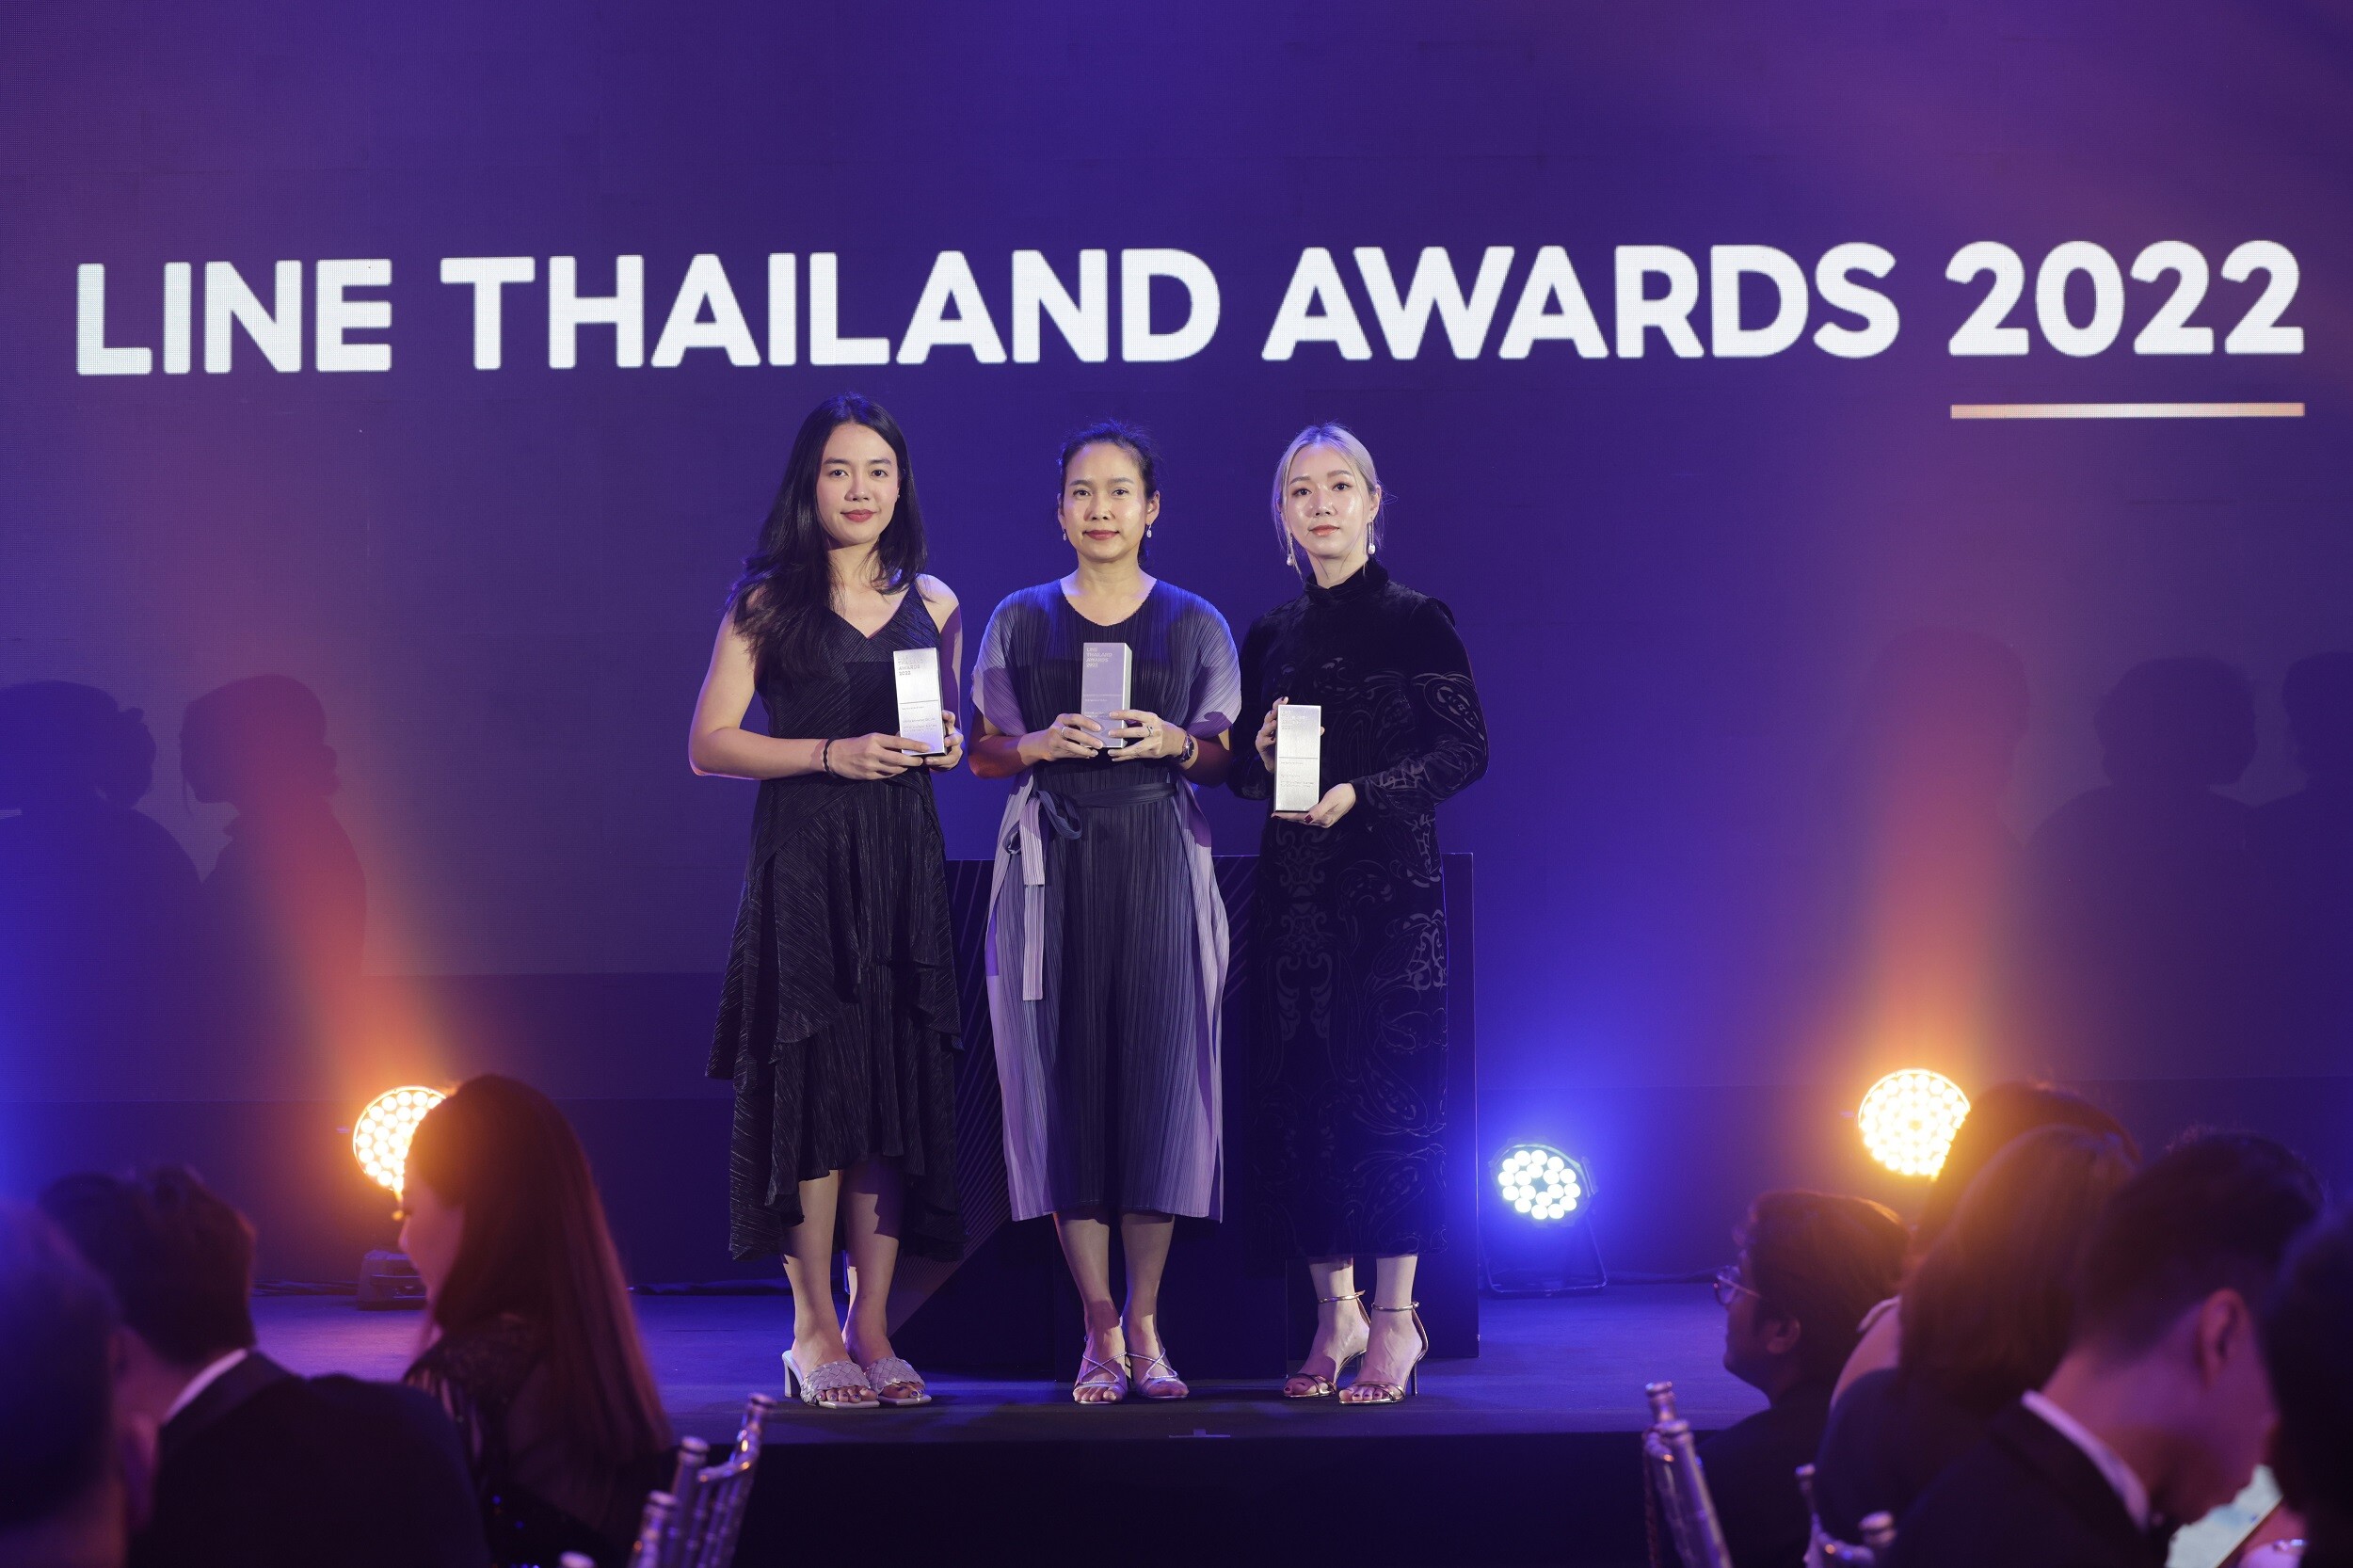 "OR" - "ก๊าซหุงต้ม ปตท." - "คาเฟ่ อเมซอน" คว้า 3 รางวัล จาก LINE Thailand Awards 2022 สุดยอดแบรนด์ที่สร้างผลงานการตลาดยอดเยี่ยมบนแพลตฟอร์ม LINE